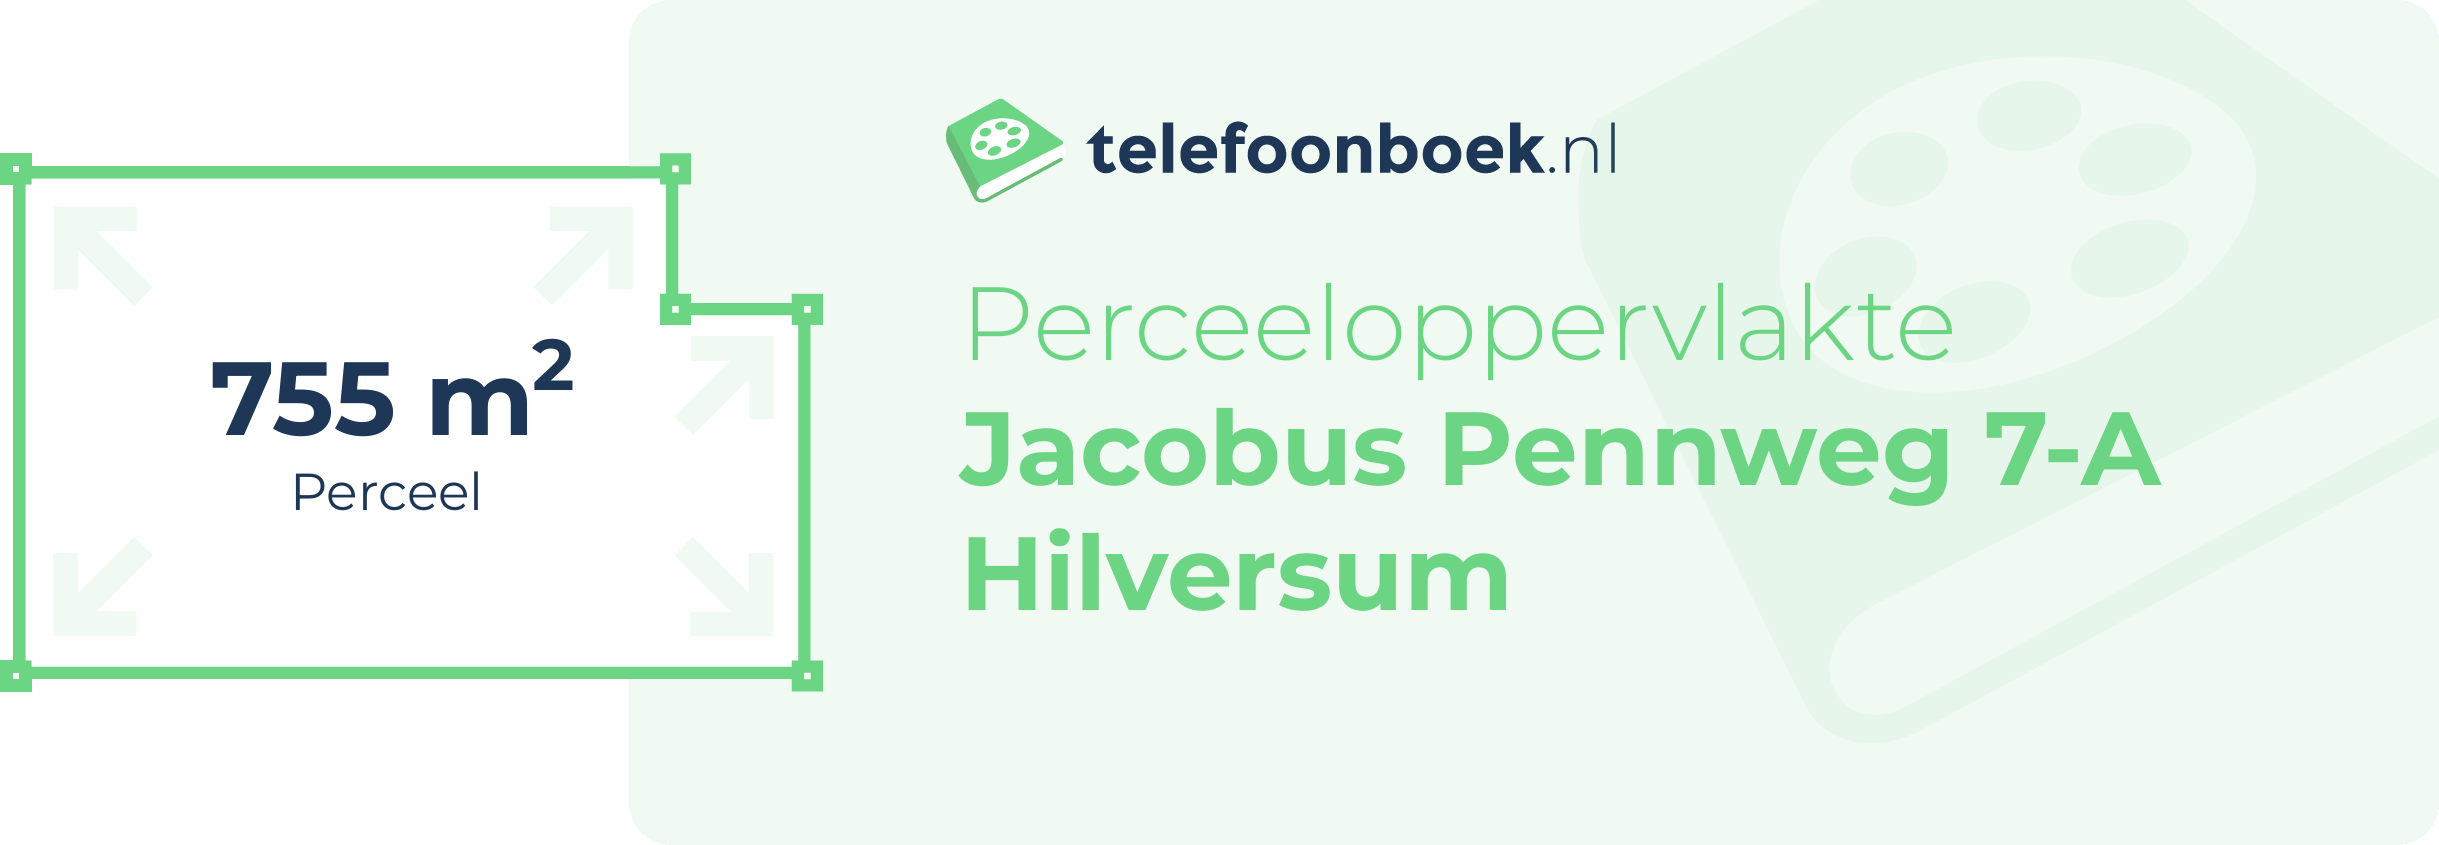 Perceeloppervlakte Jacobus Pennweg 7-A Hilversum